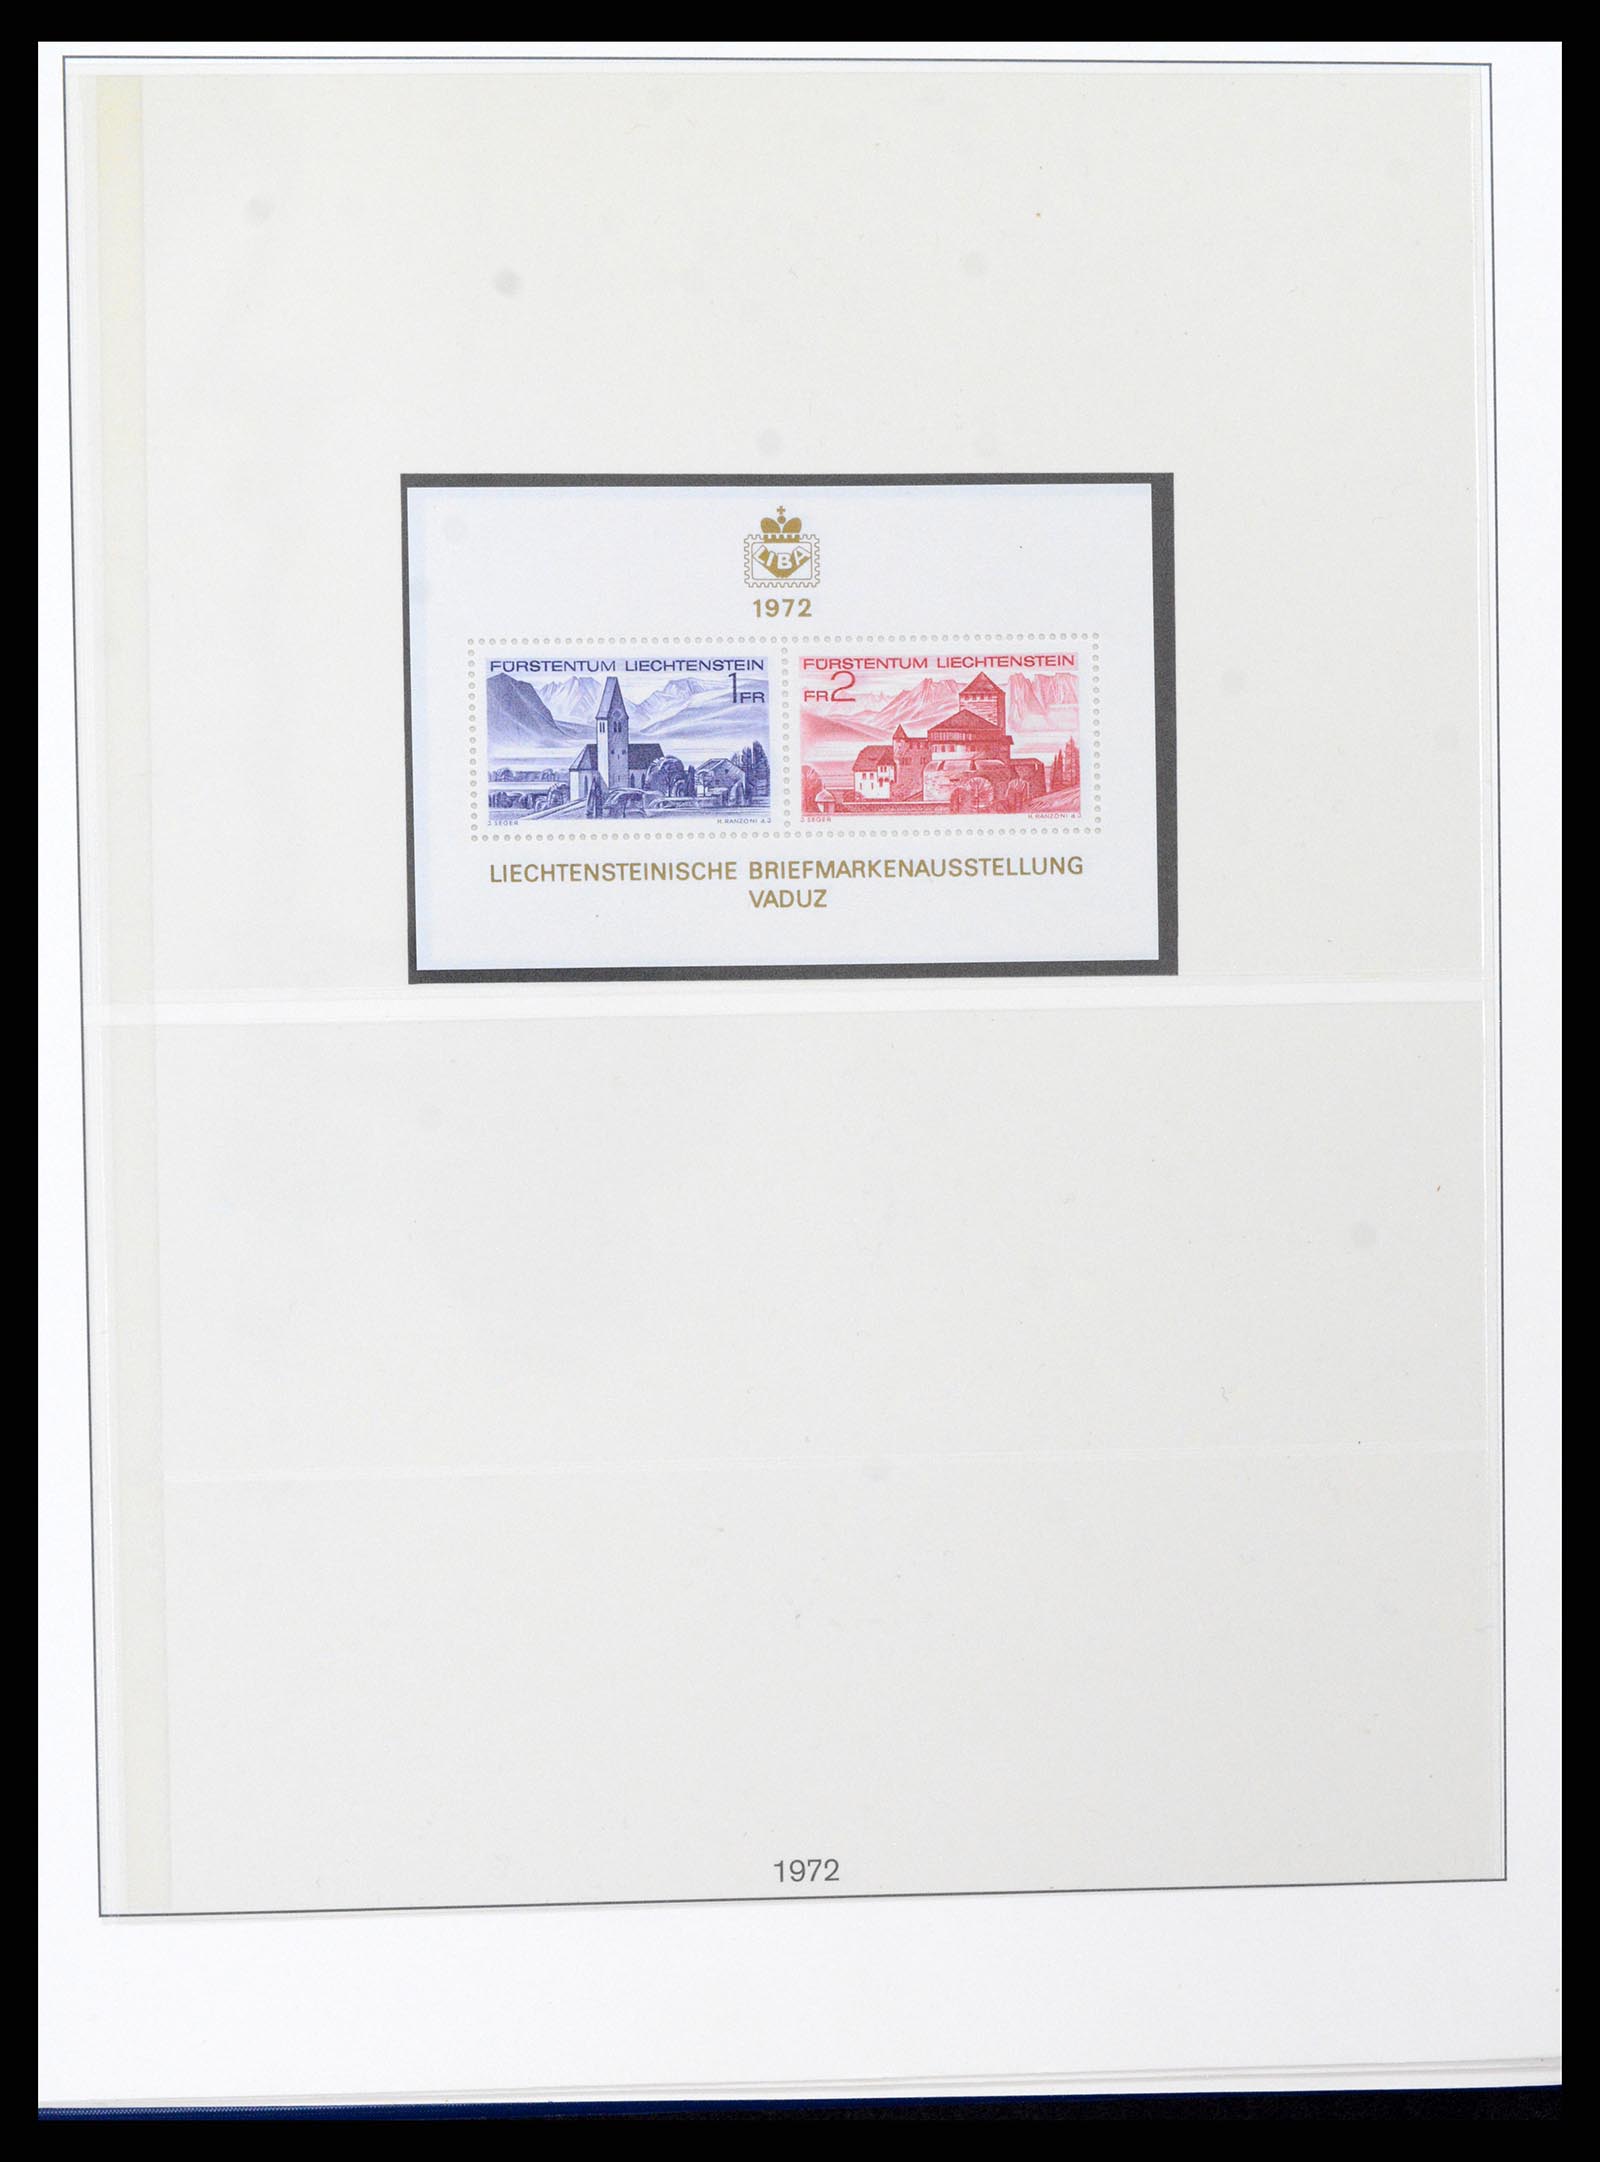 37295 056 - Stamp collection 37295 Liechtenstein 1912-2009.